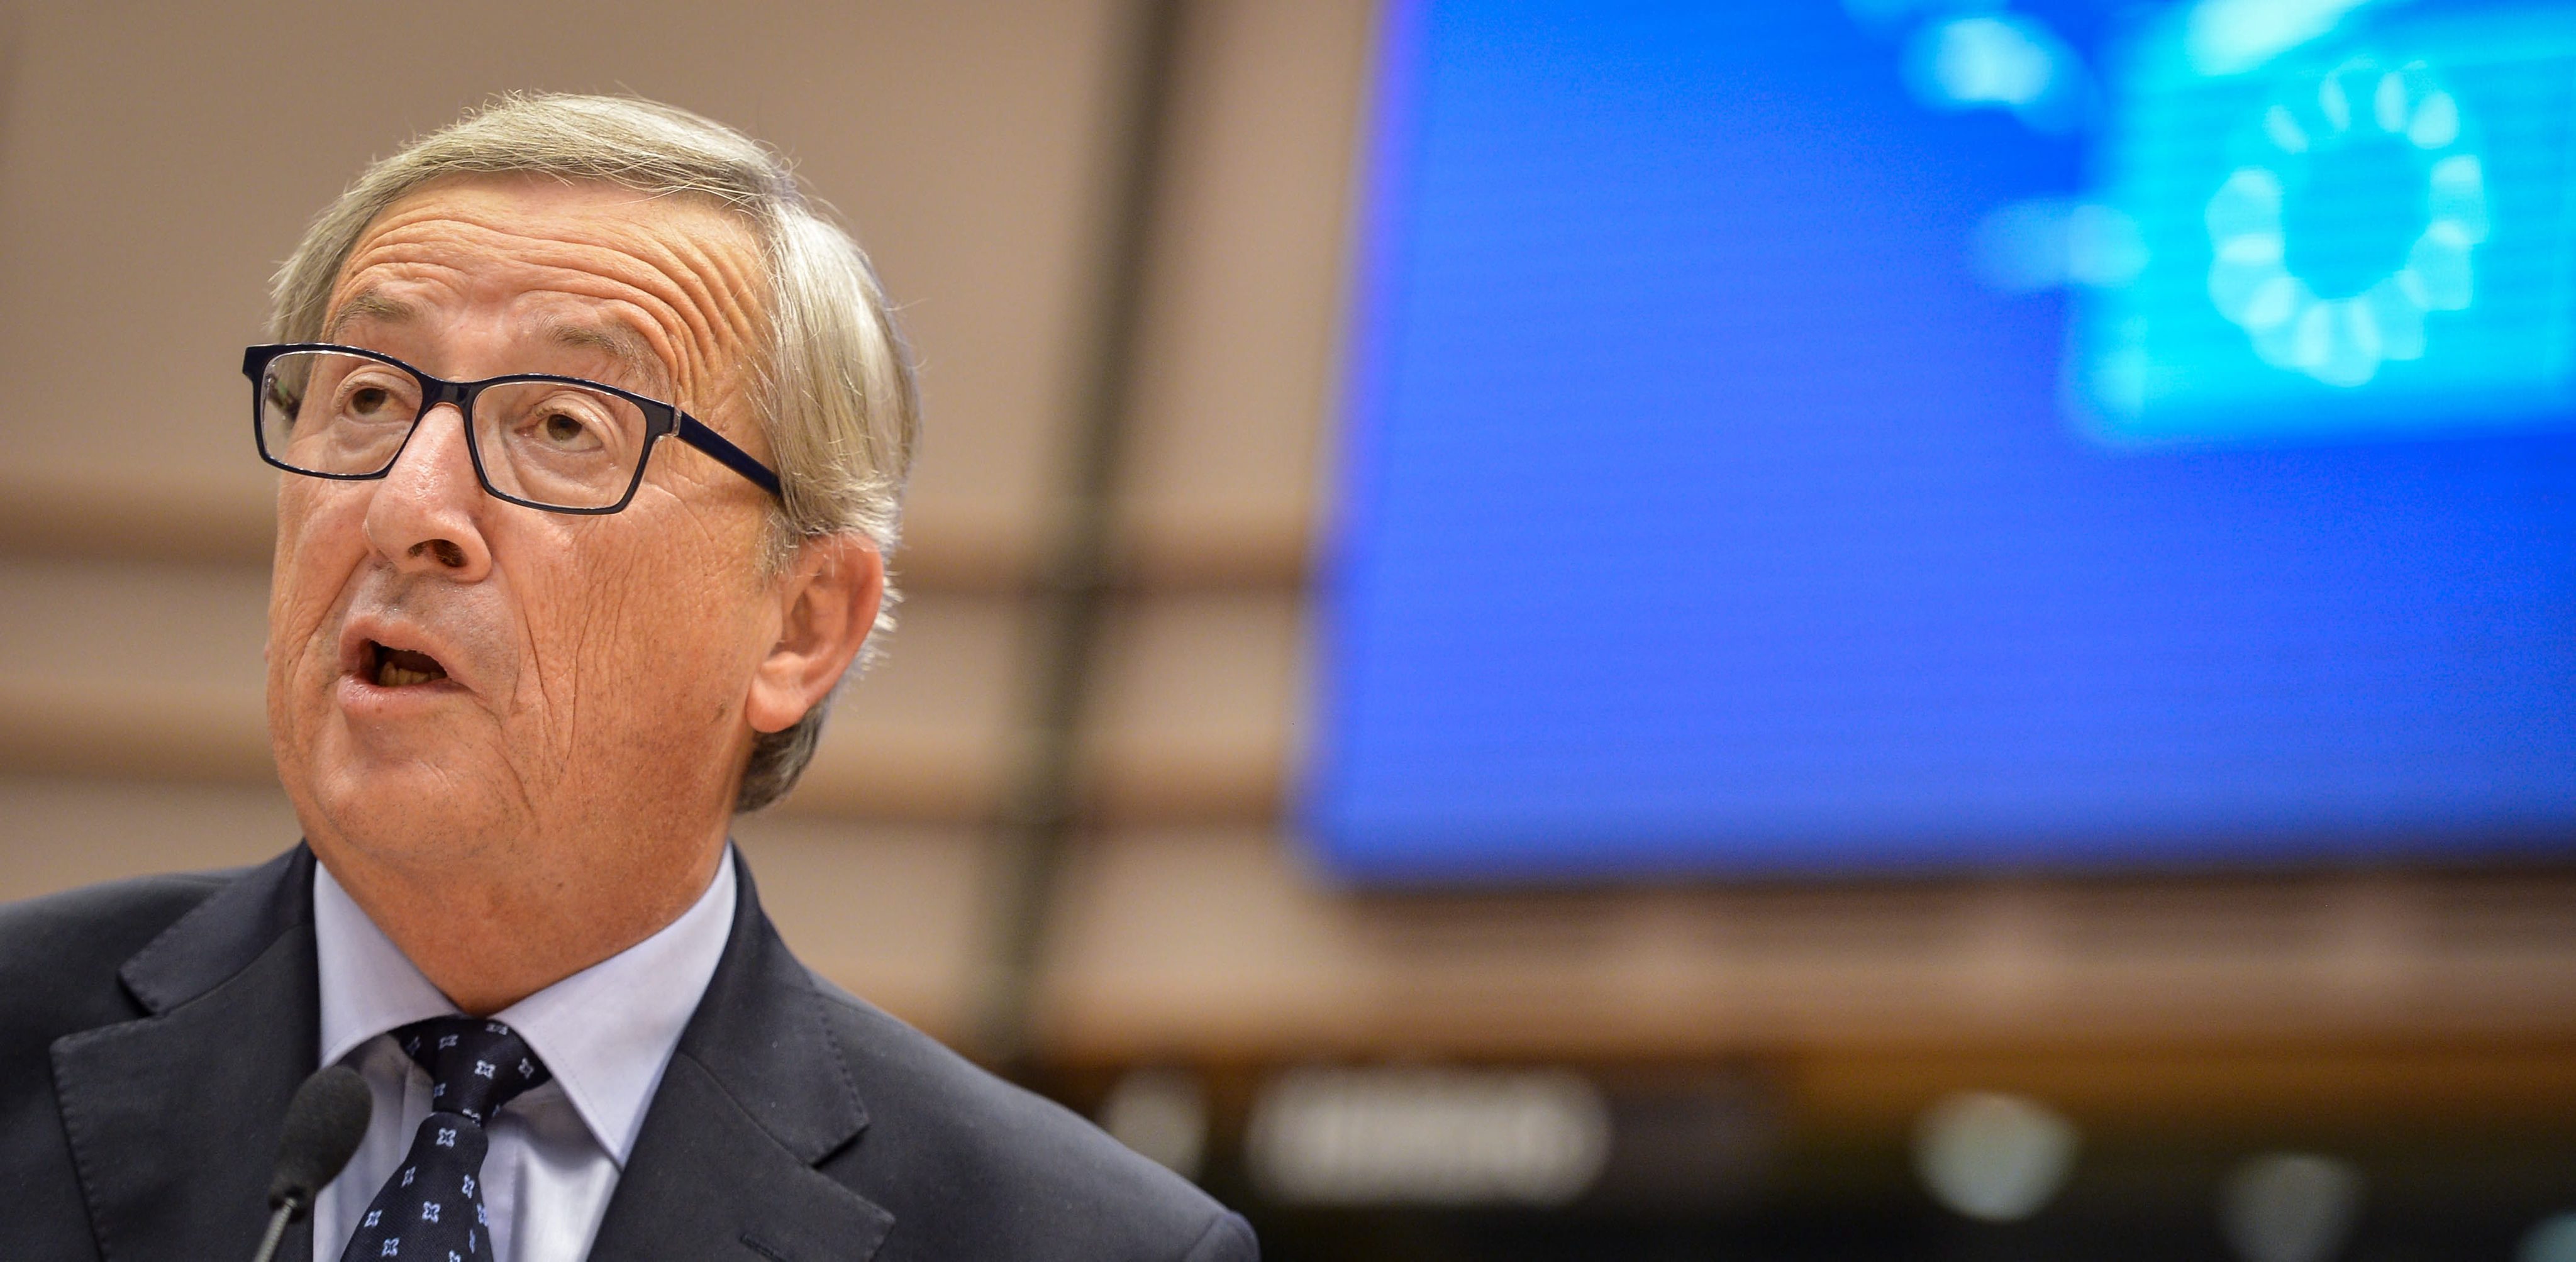 Ο Γιούνγκερ καταργεί την τρόικα και θέλει να κρατήσει με κάθε μέσο την Ελλάδα στην ευρωζώνη